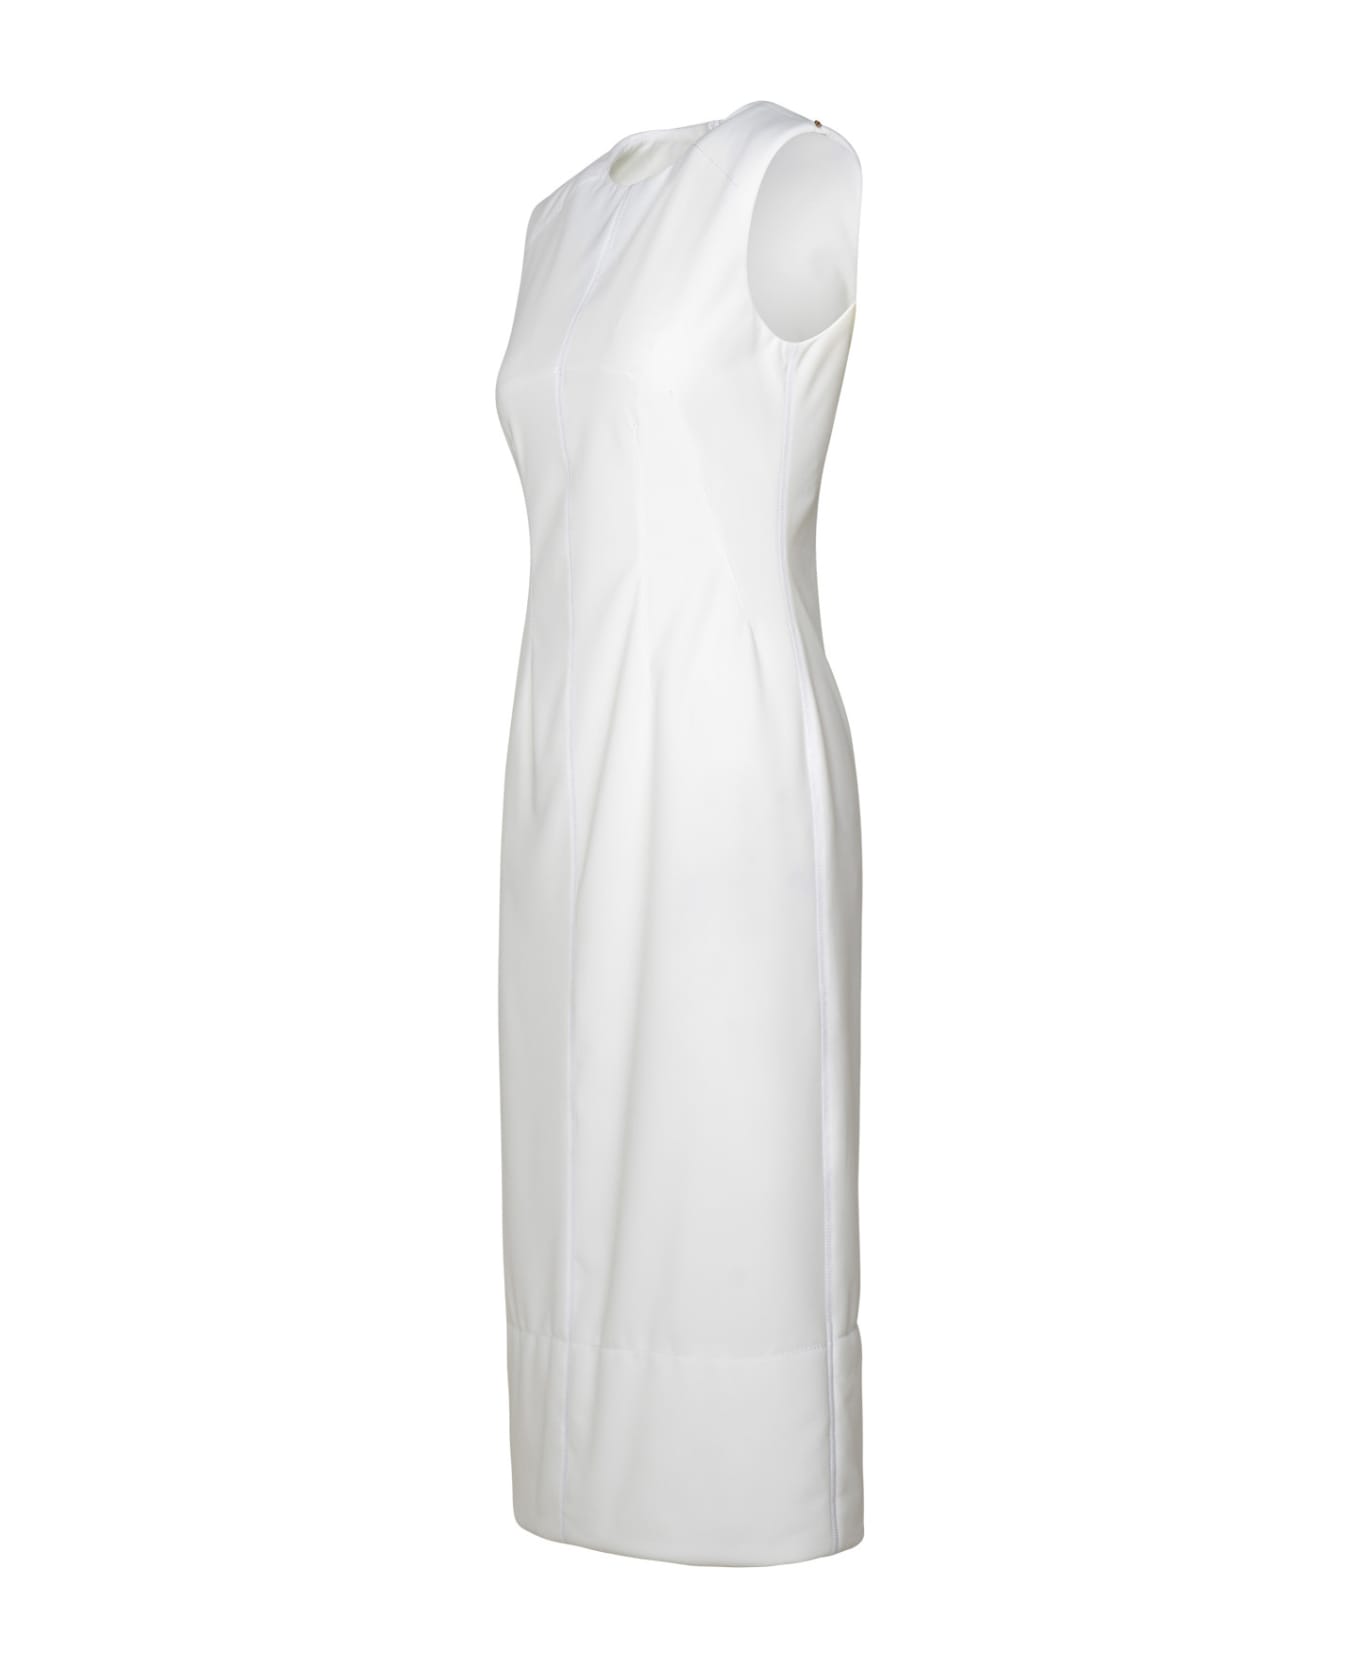 SportMax 'cariddi' White Polyester Dress - White